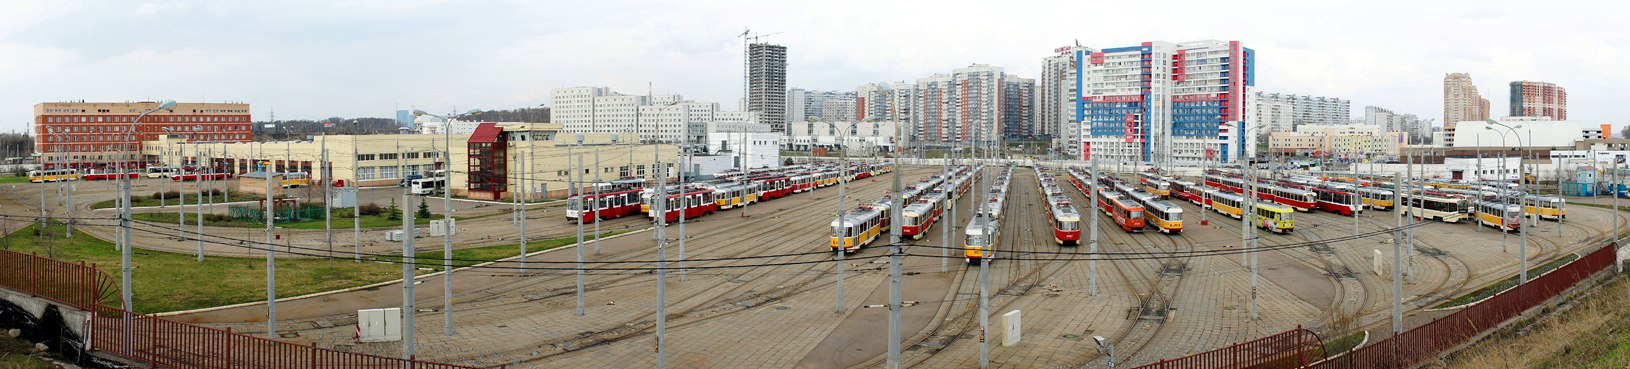 莫斯科 — Tram depots: [3] Krasnopresnenskoye. New site in Strogino; 莫斯科 — Views from a height